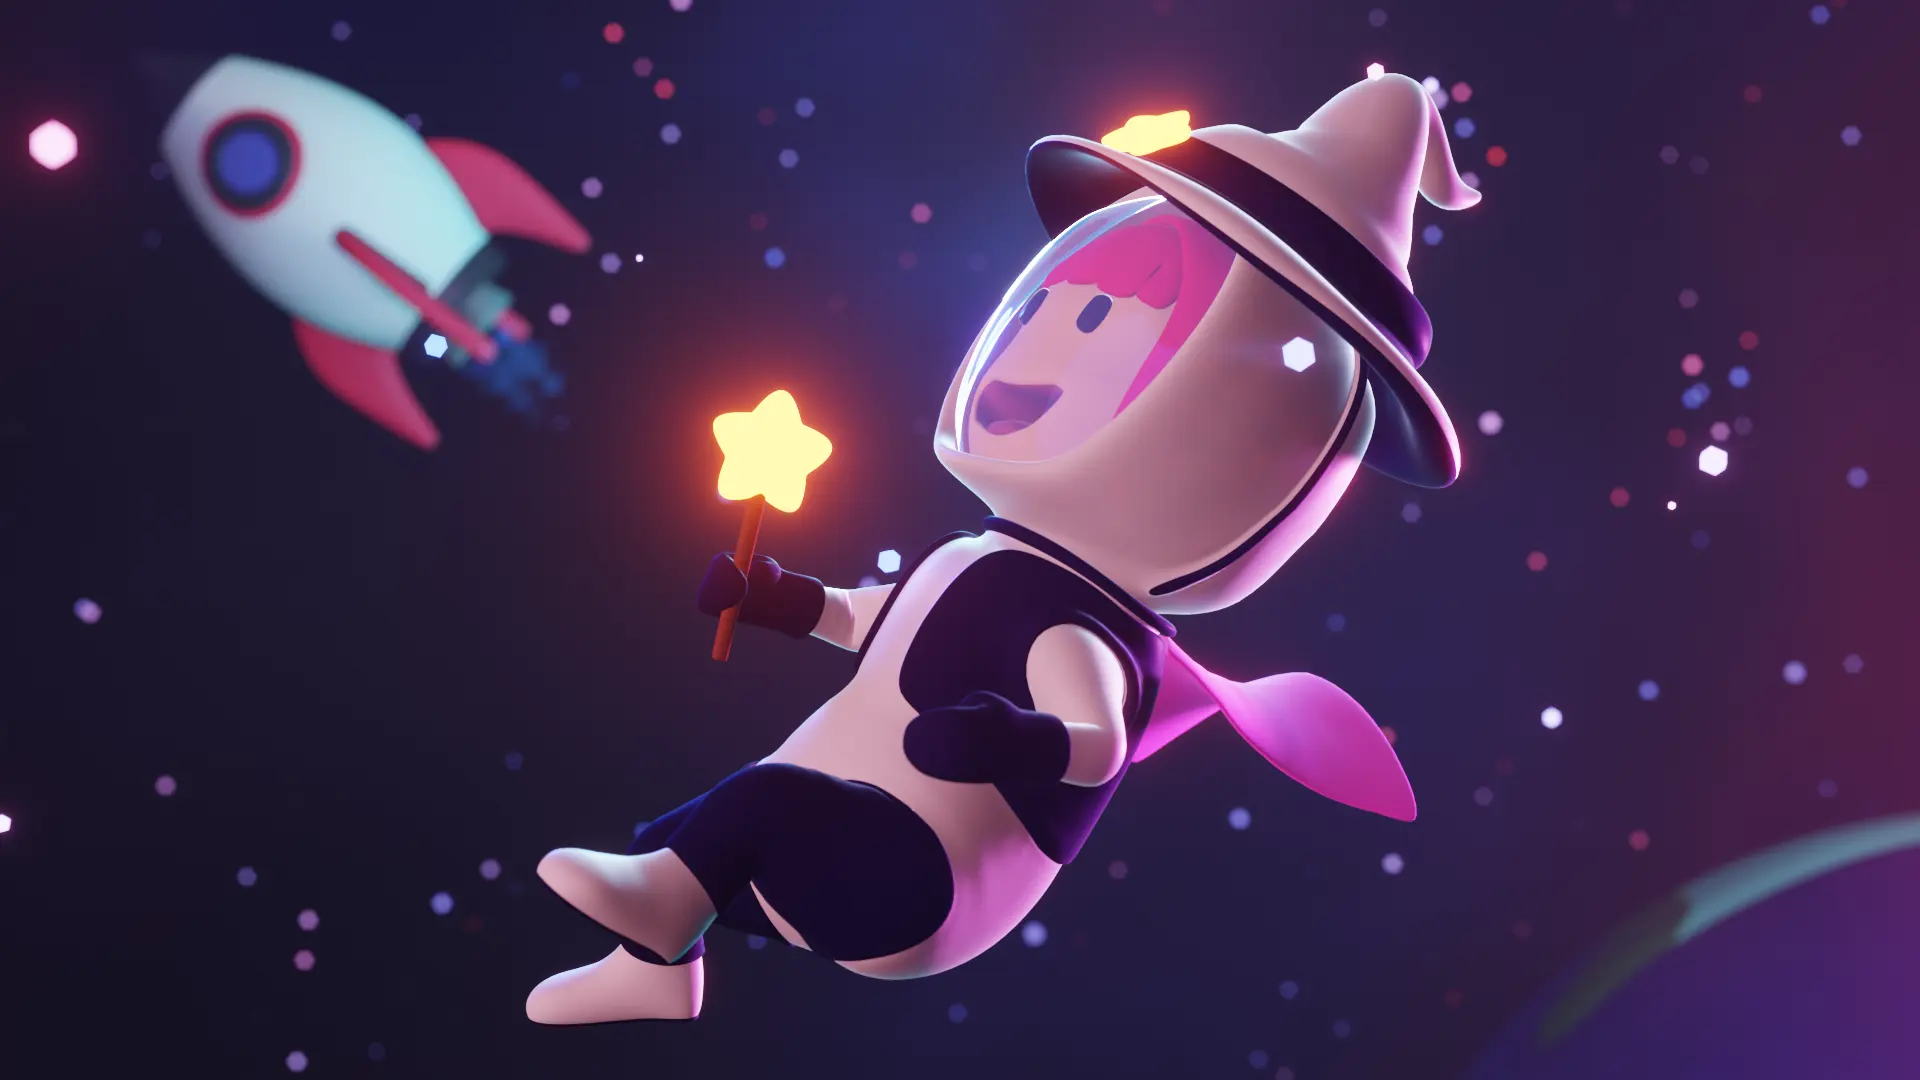 Banner da nossa mascote no espaço, vestindo seu traje de astronauta e usando um grande chapéu de mago. Ela está olhando para as estrelas e sorrindo.